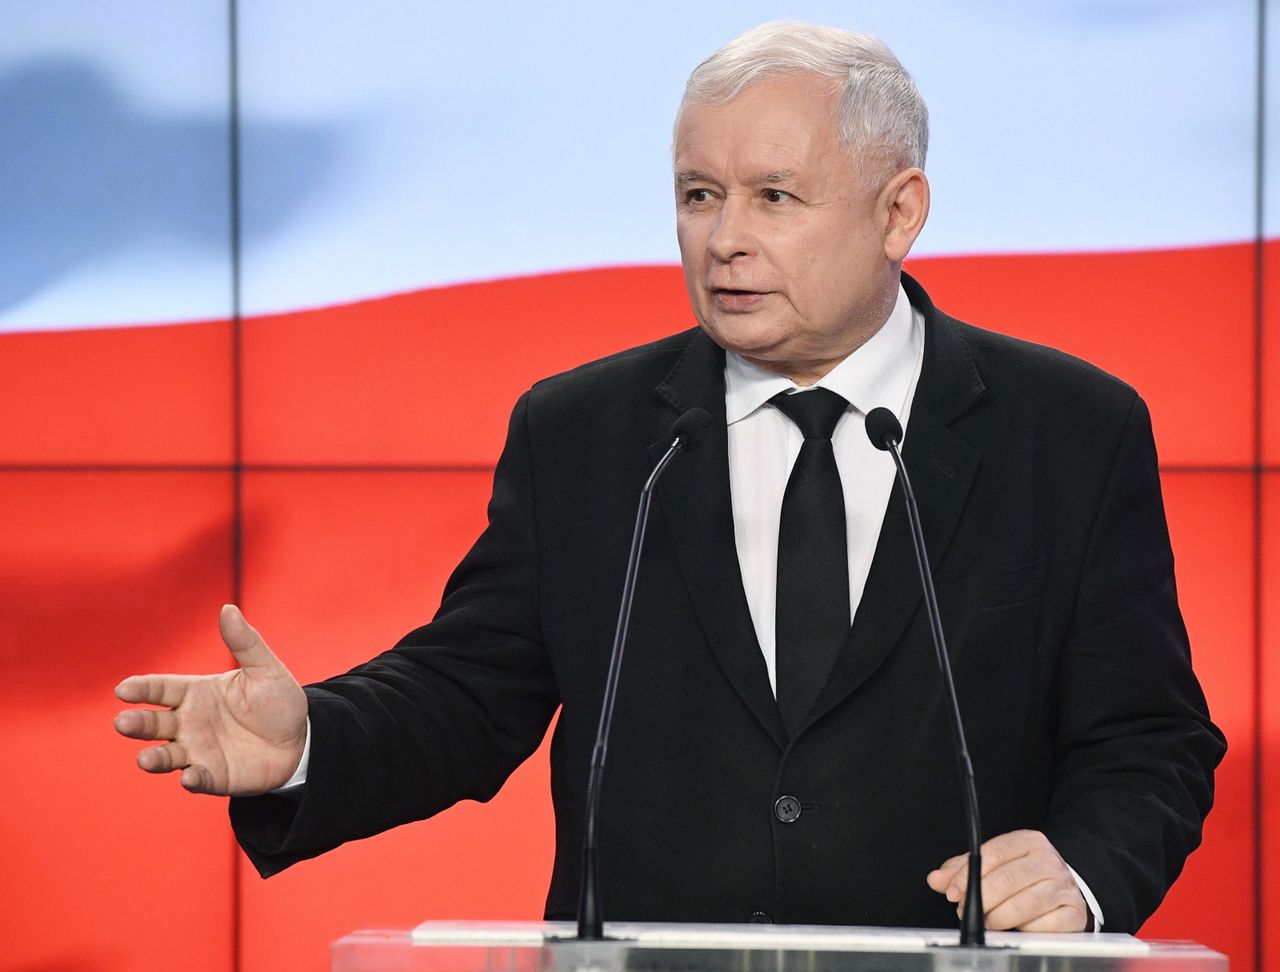 "A kto knuje, to ja wiem". Jarosław Kaczyński dyscyplinuje władze PiS